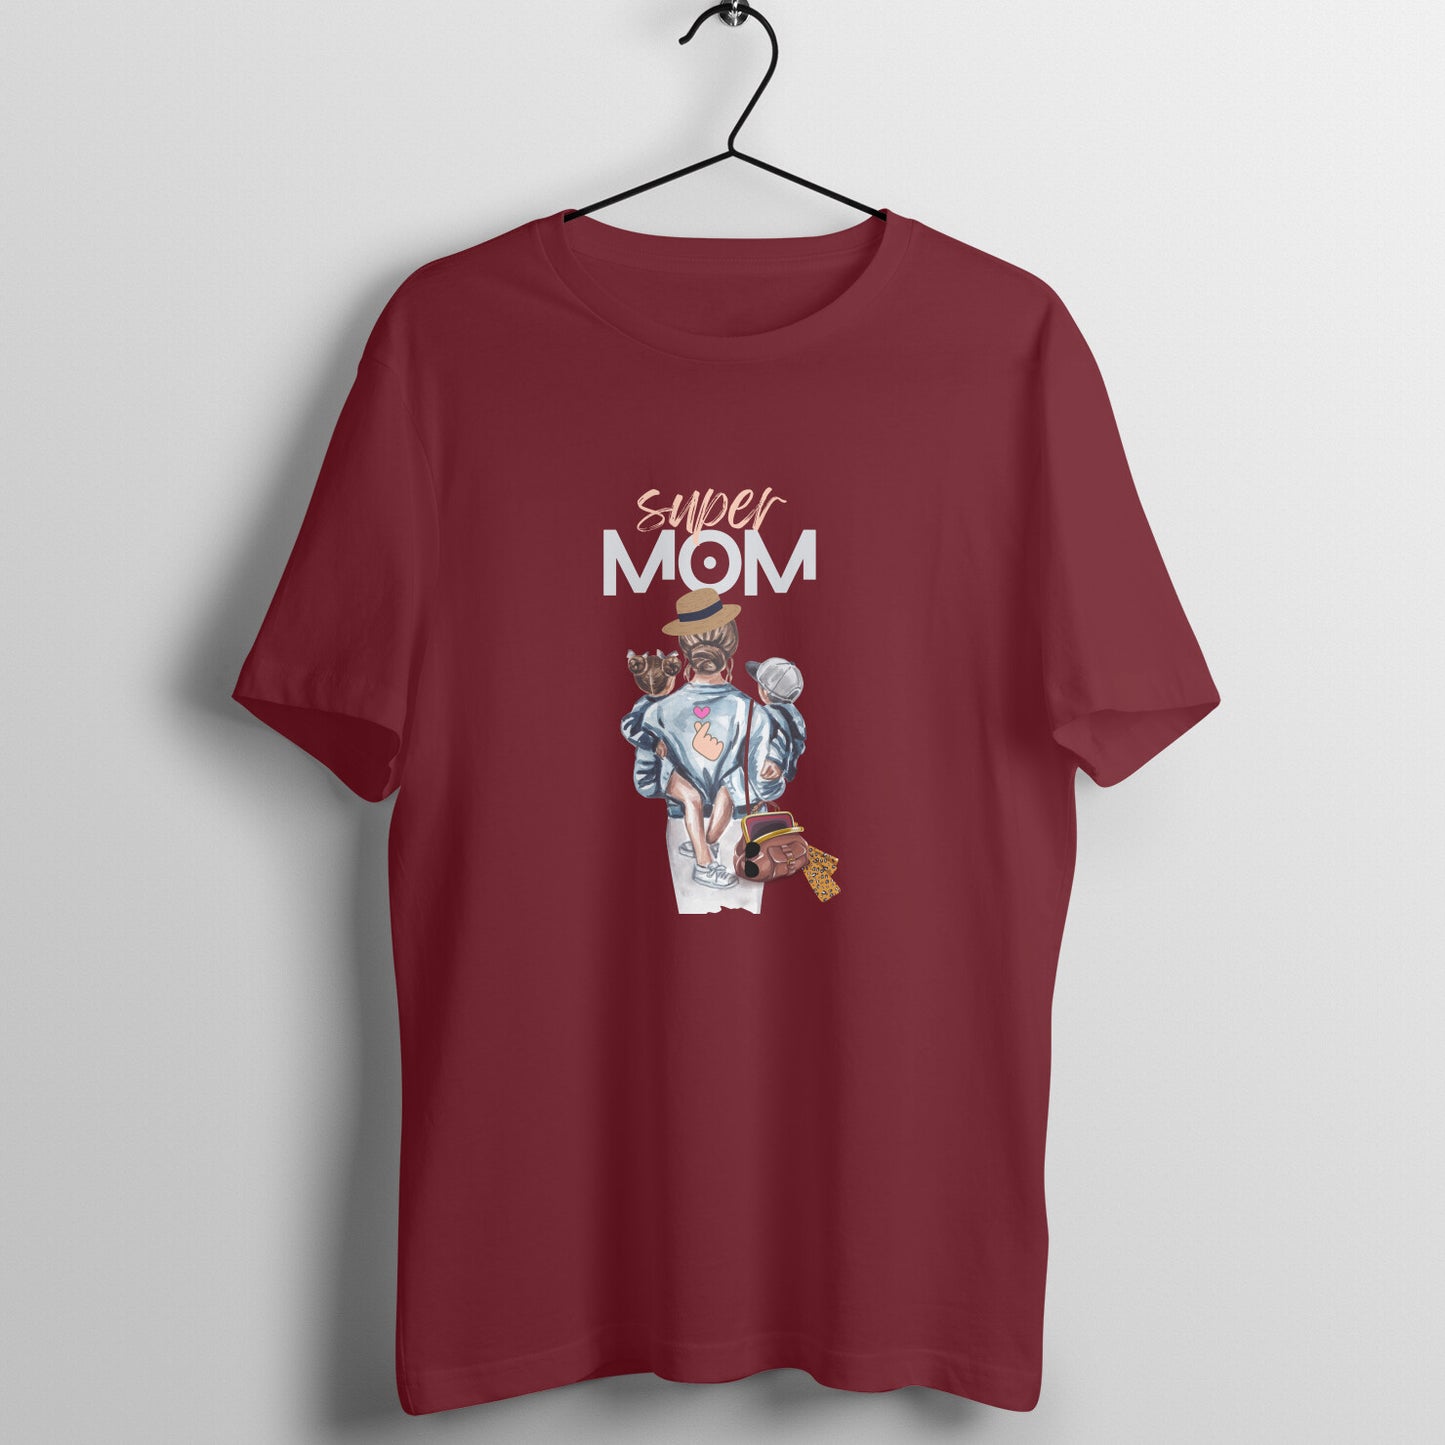 Super Mom- Oversized Women's dark shade tee